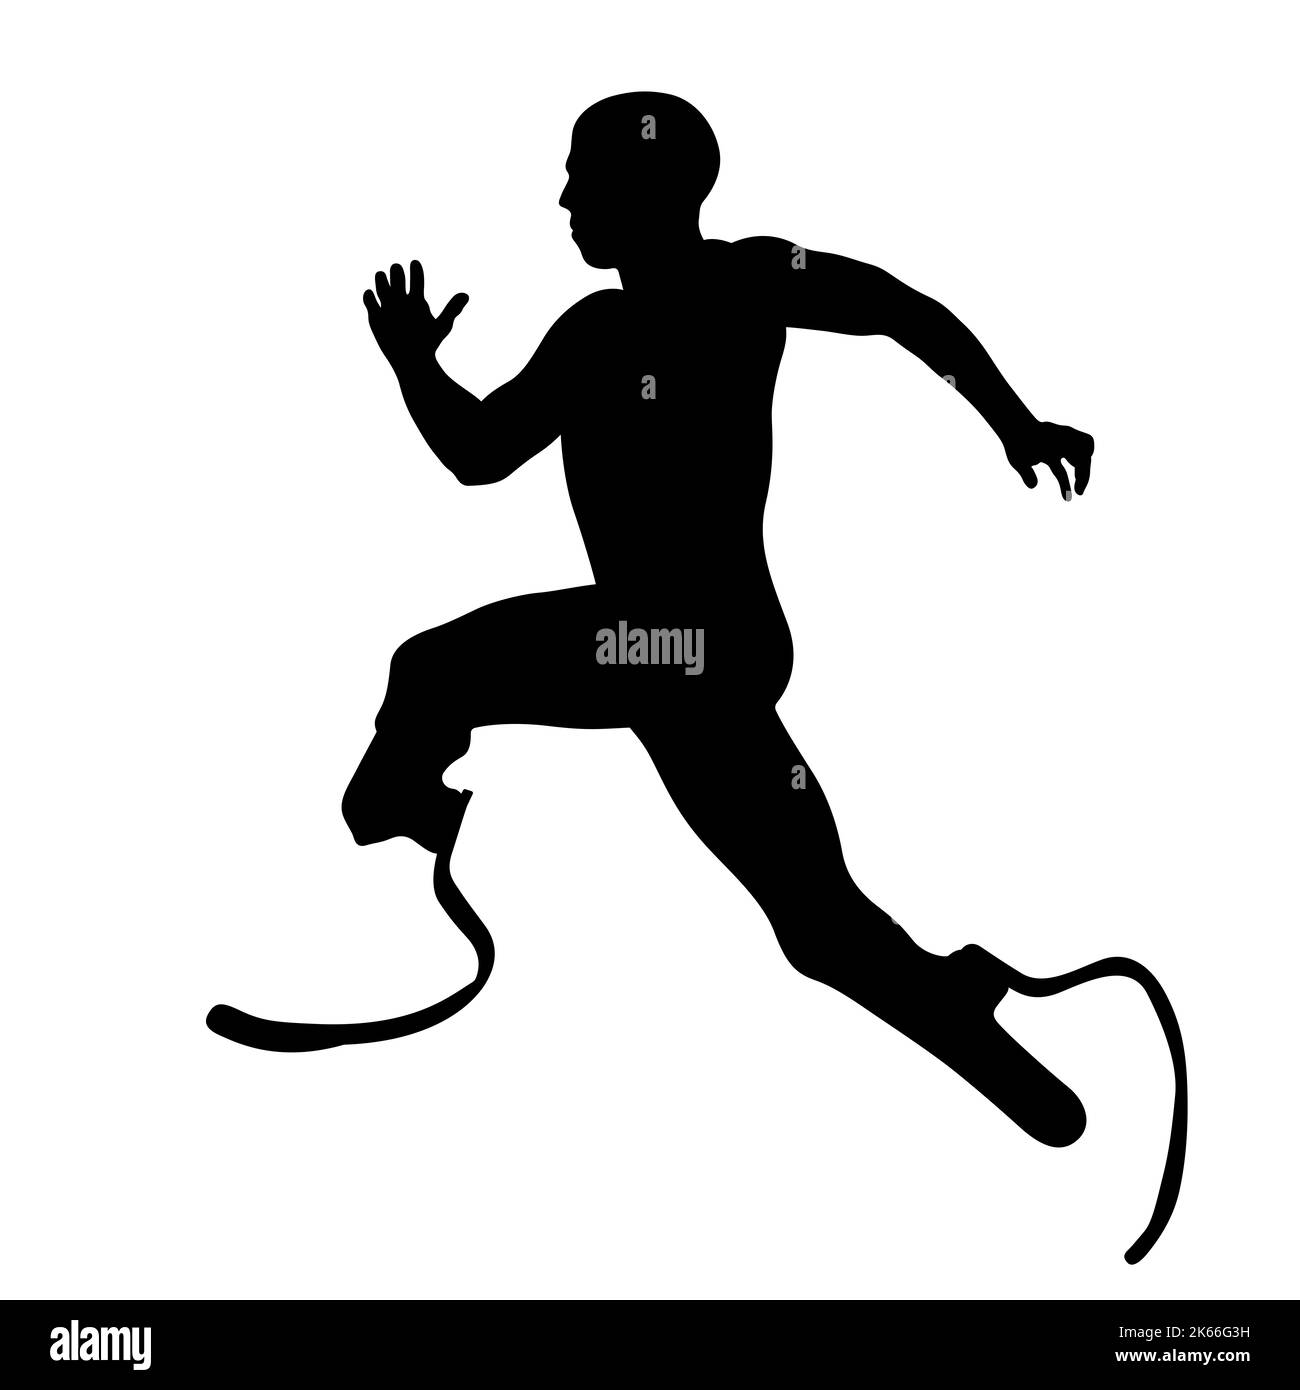 corridore disabilitato su protesi che corrono in silhouette nera Foto Stock